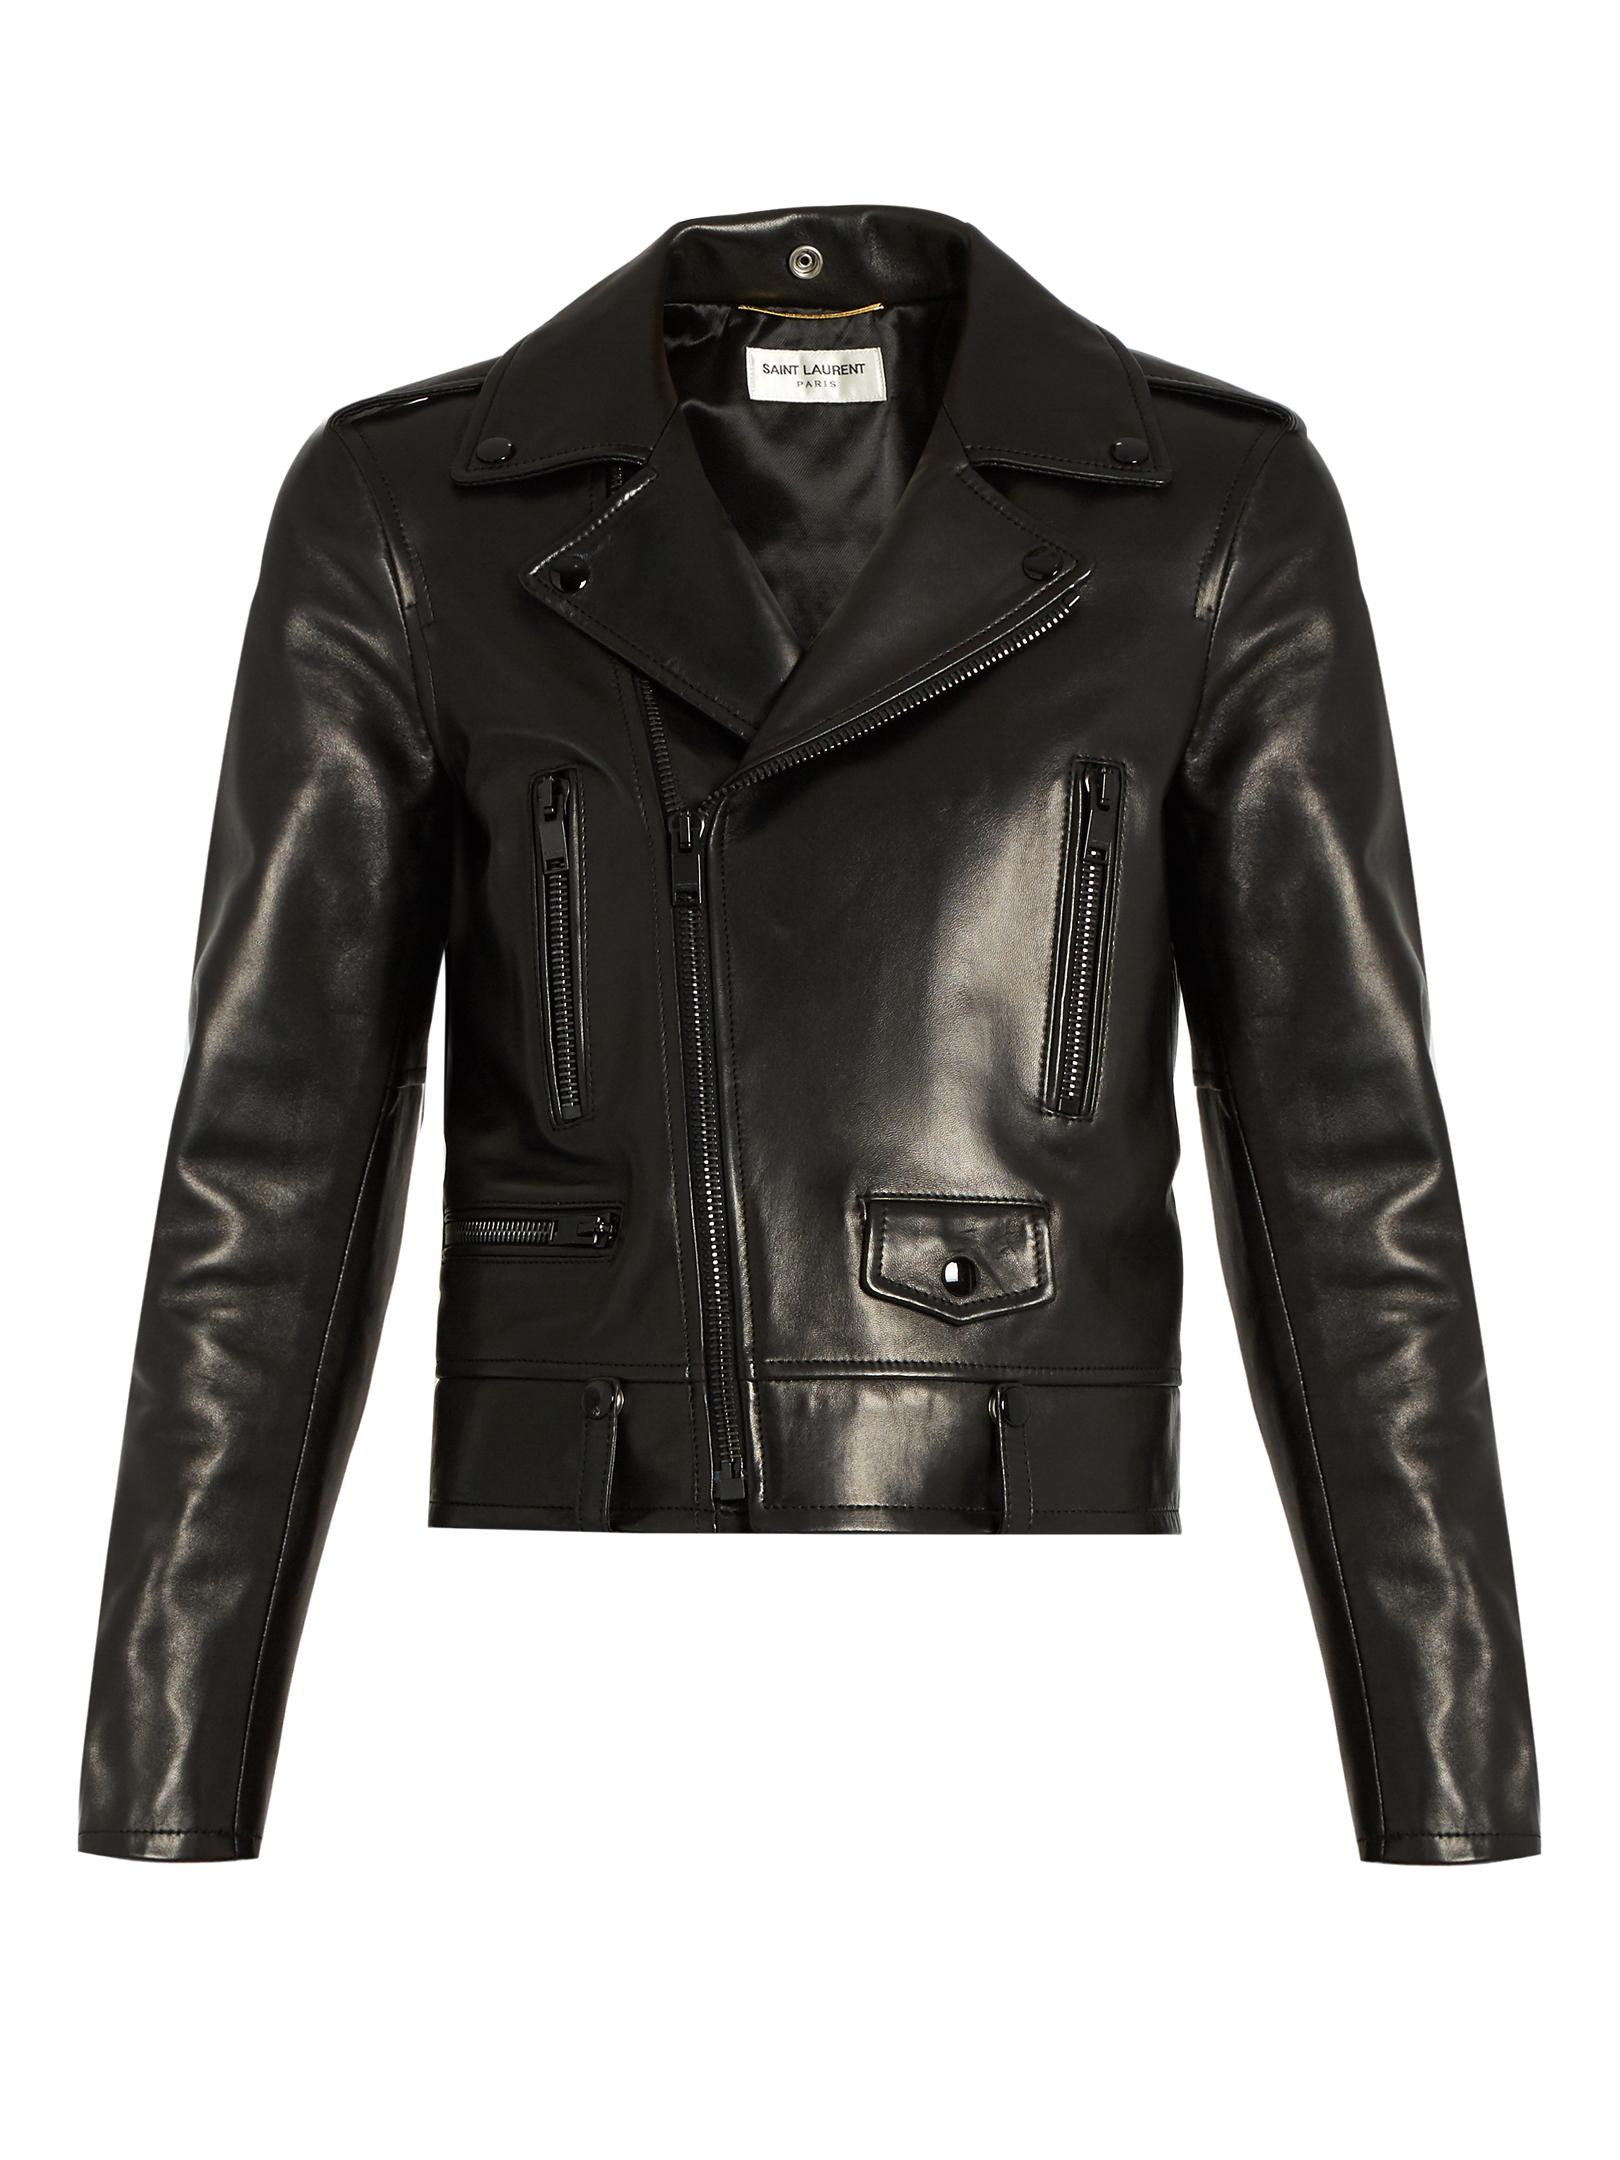 Saint Laurent L01 Leather Biker Jacket in Black | Lyst